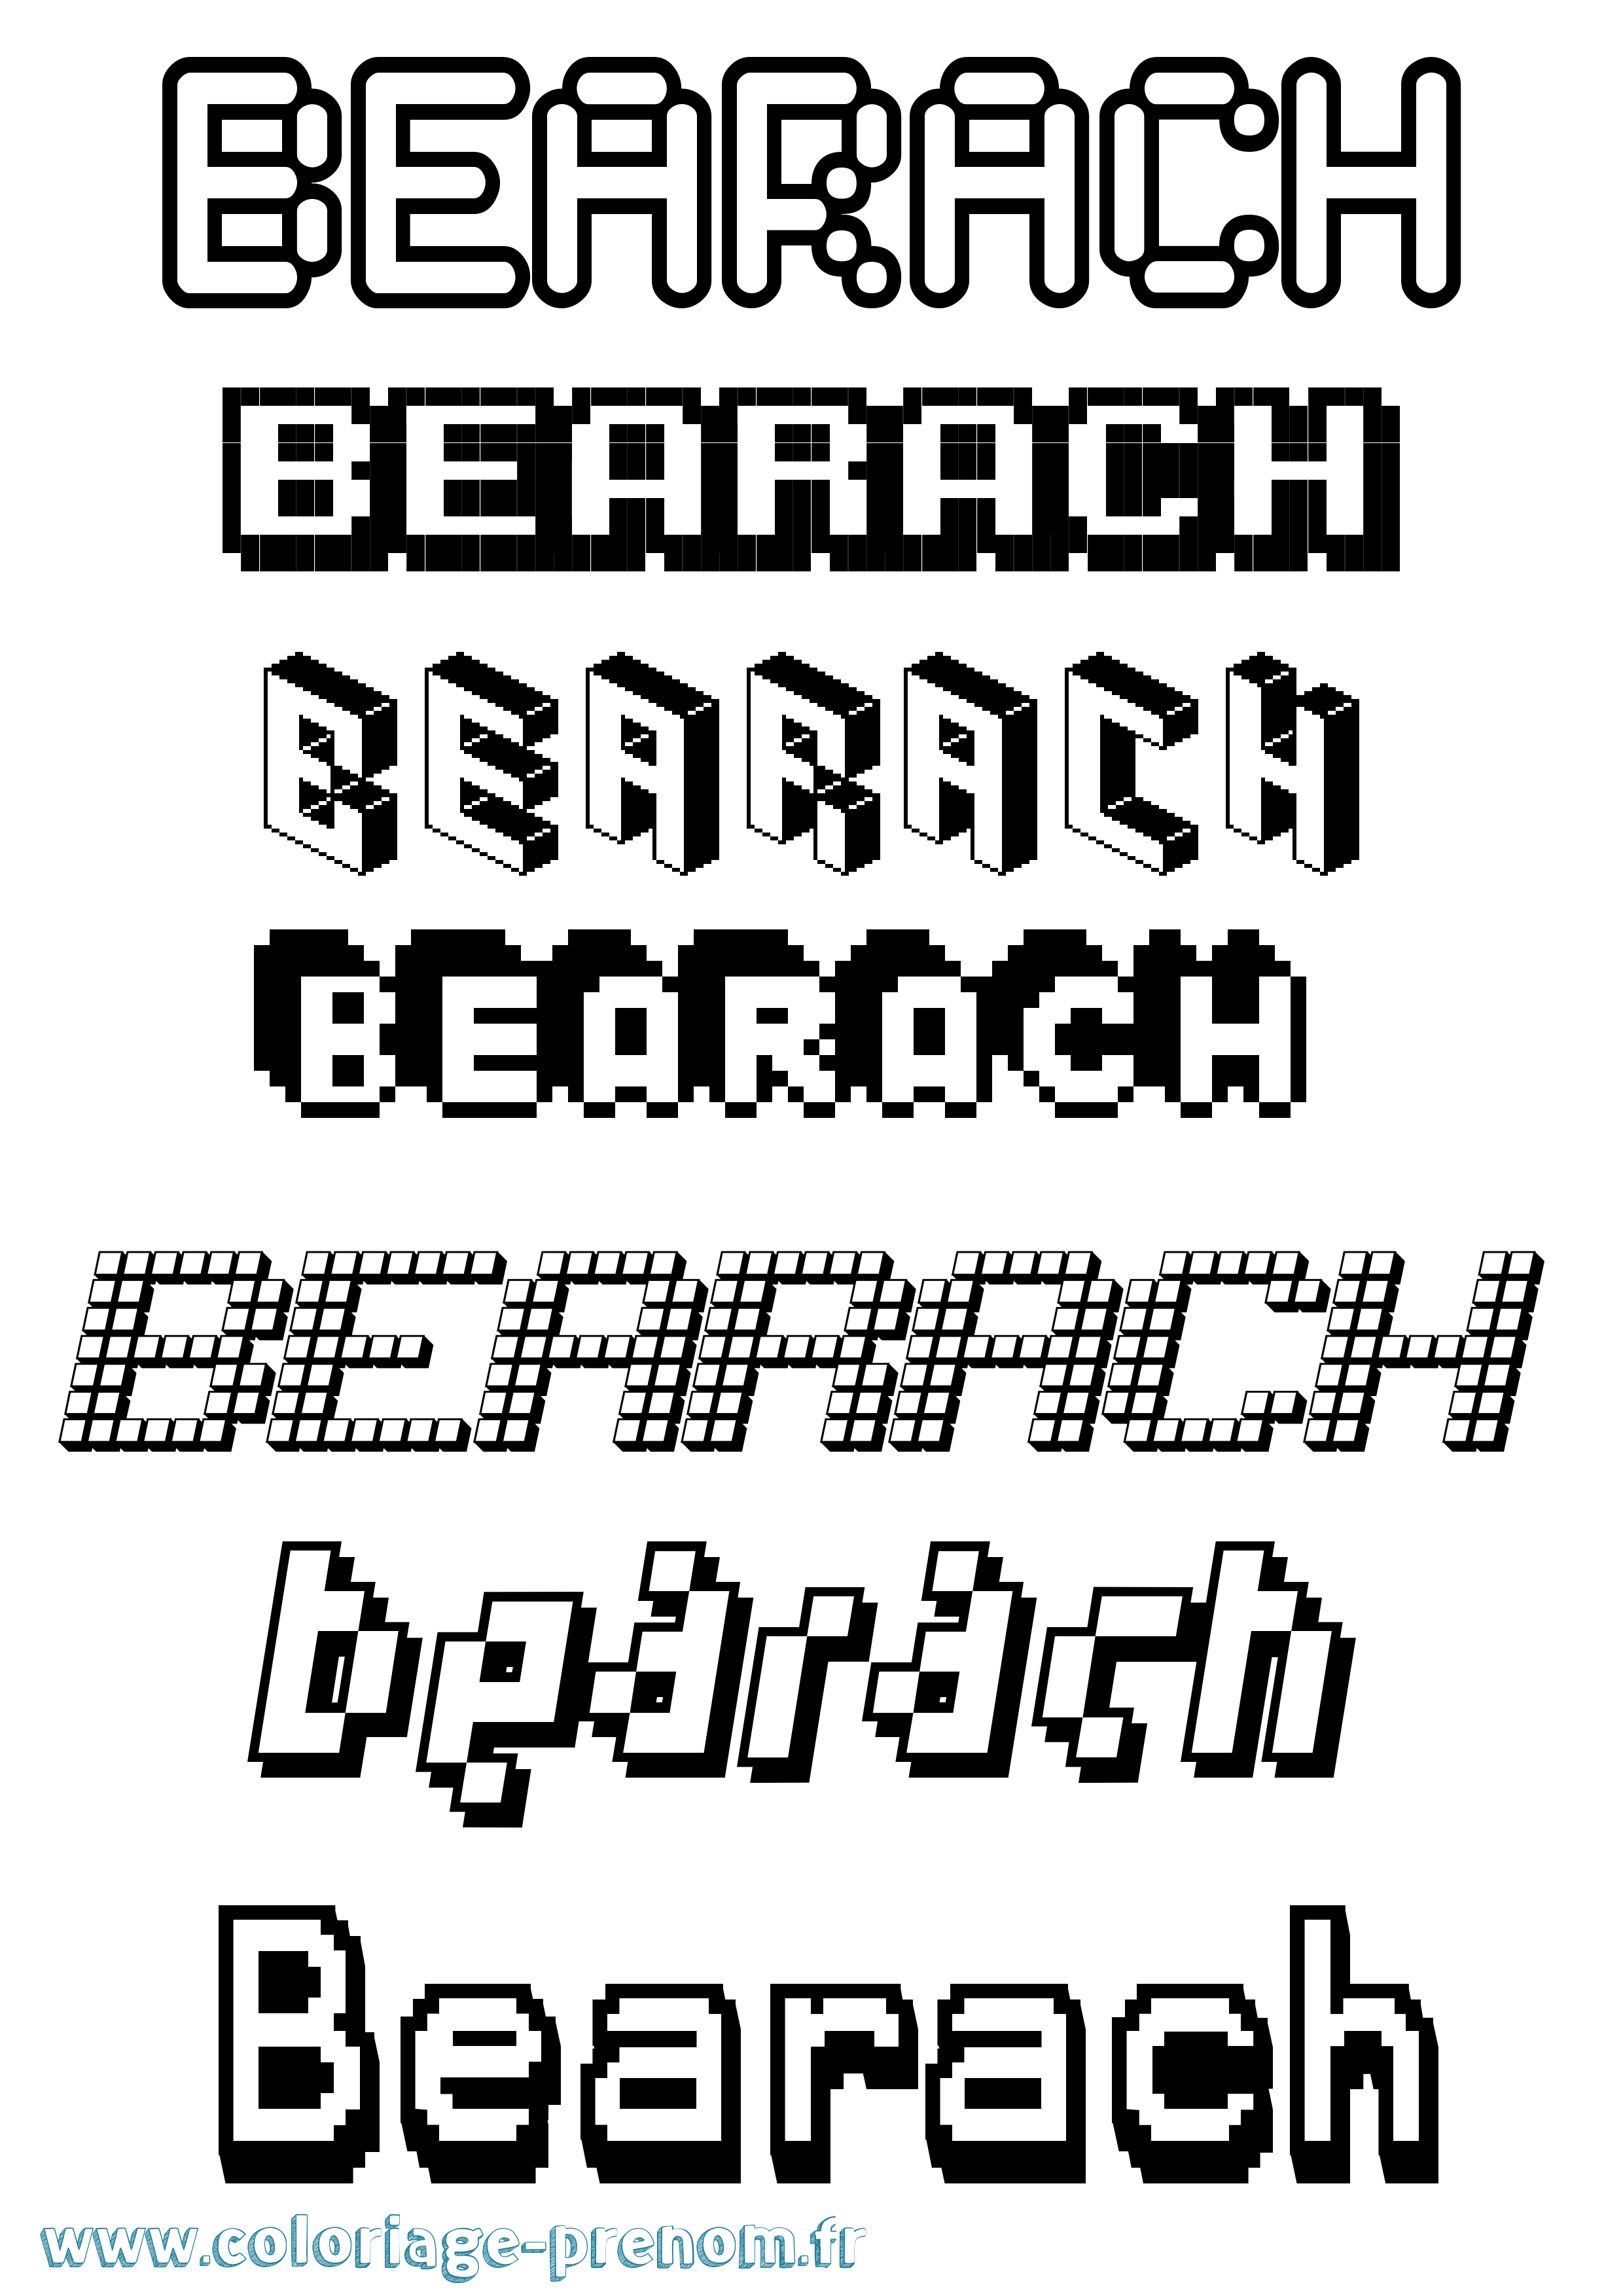 Coloriage prénom Bearach Pixel